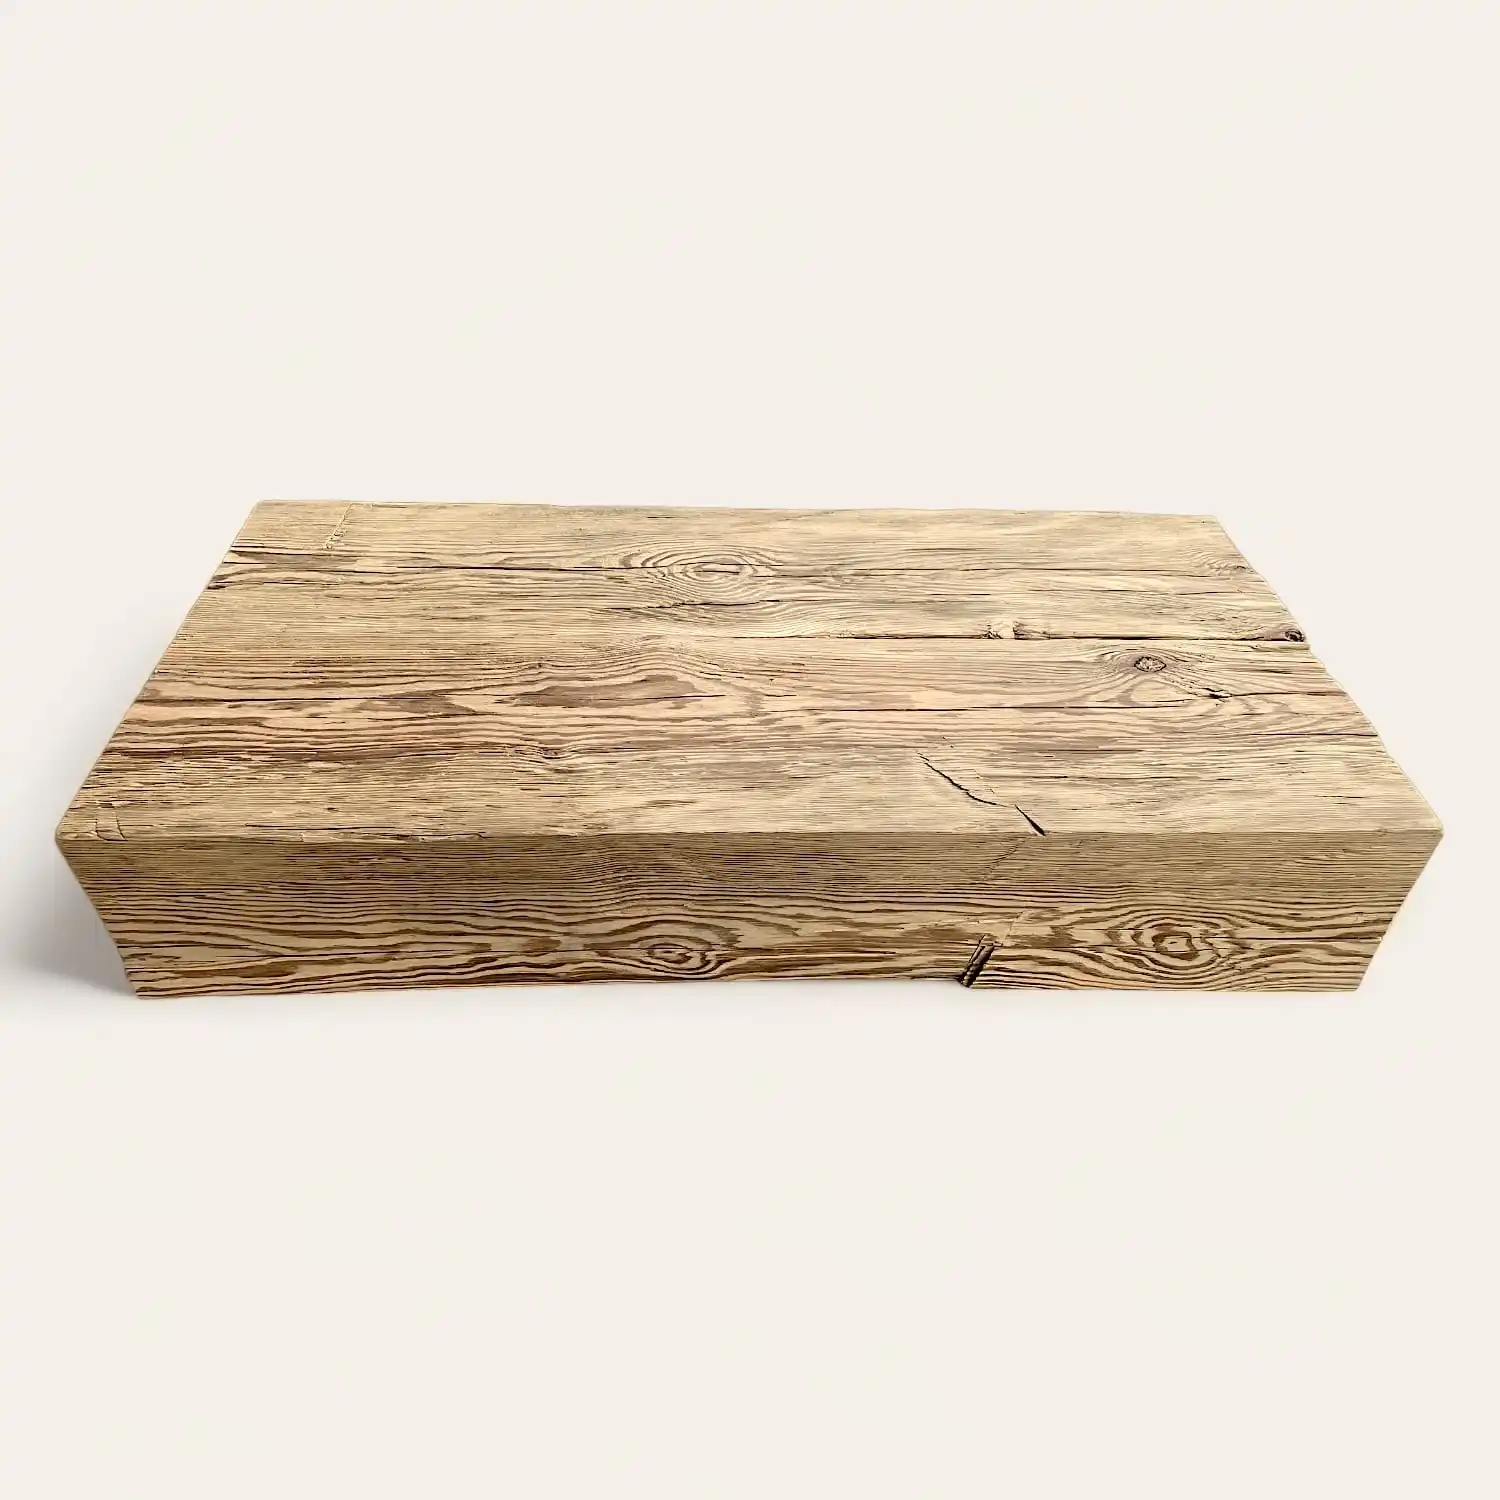  Une planche de bois vieilli sur fond blanc. 